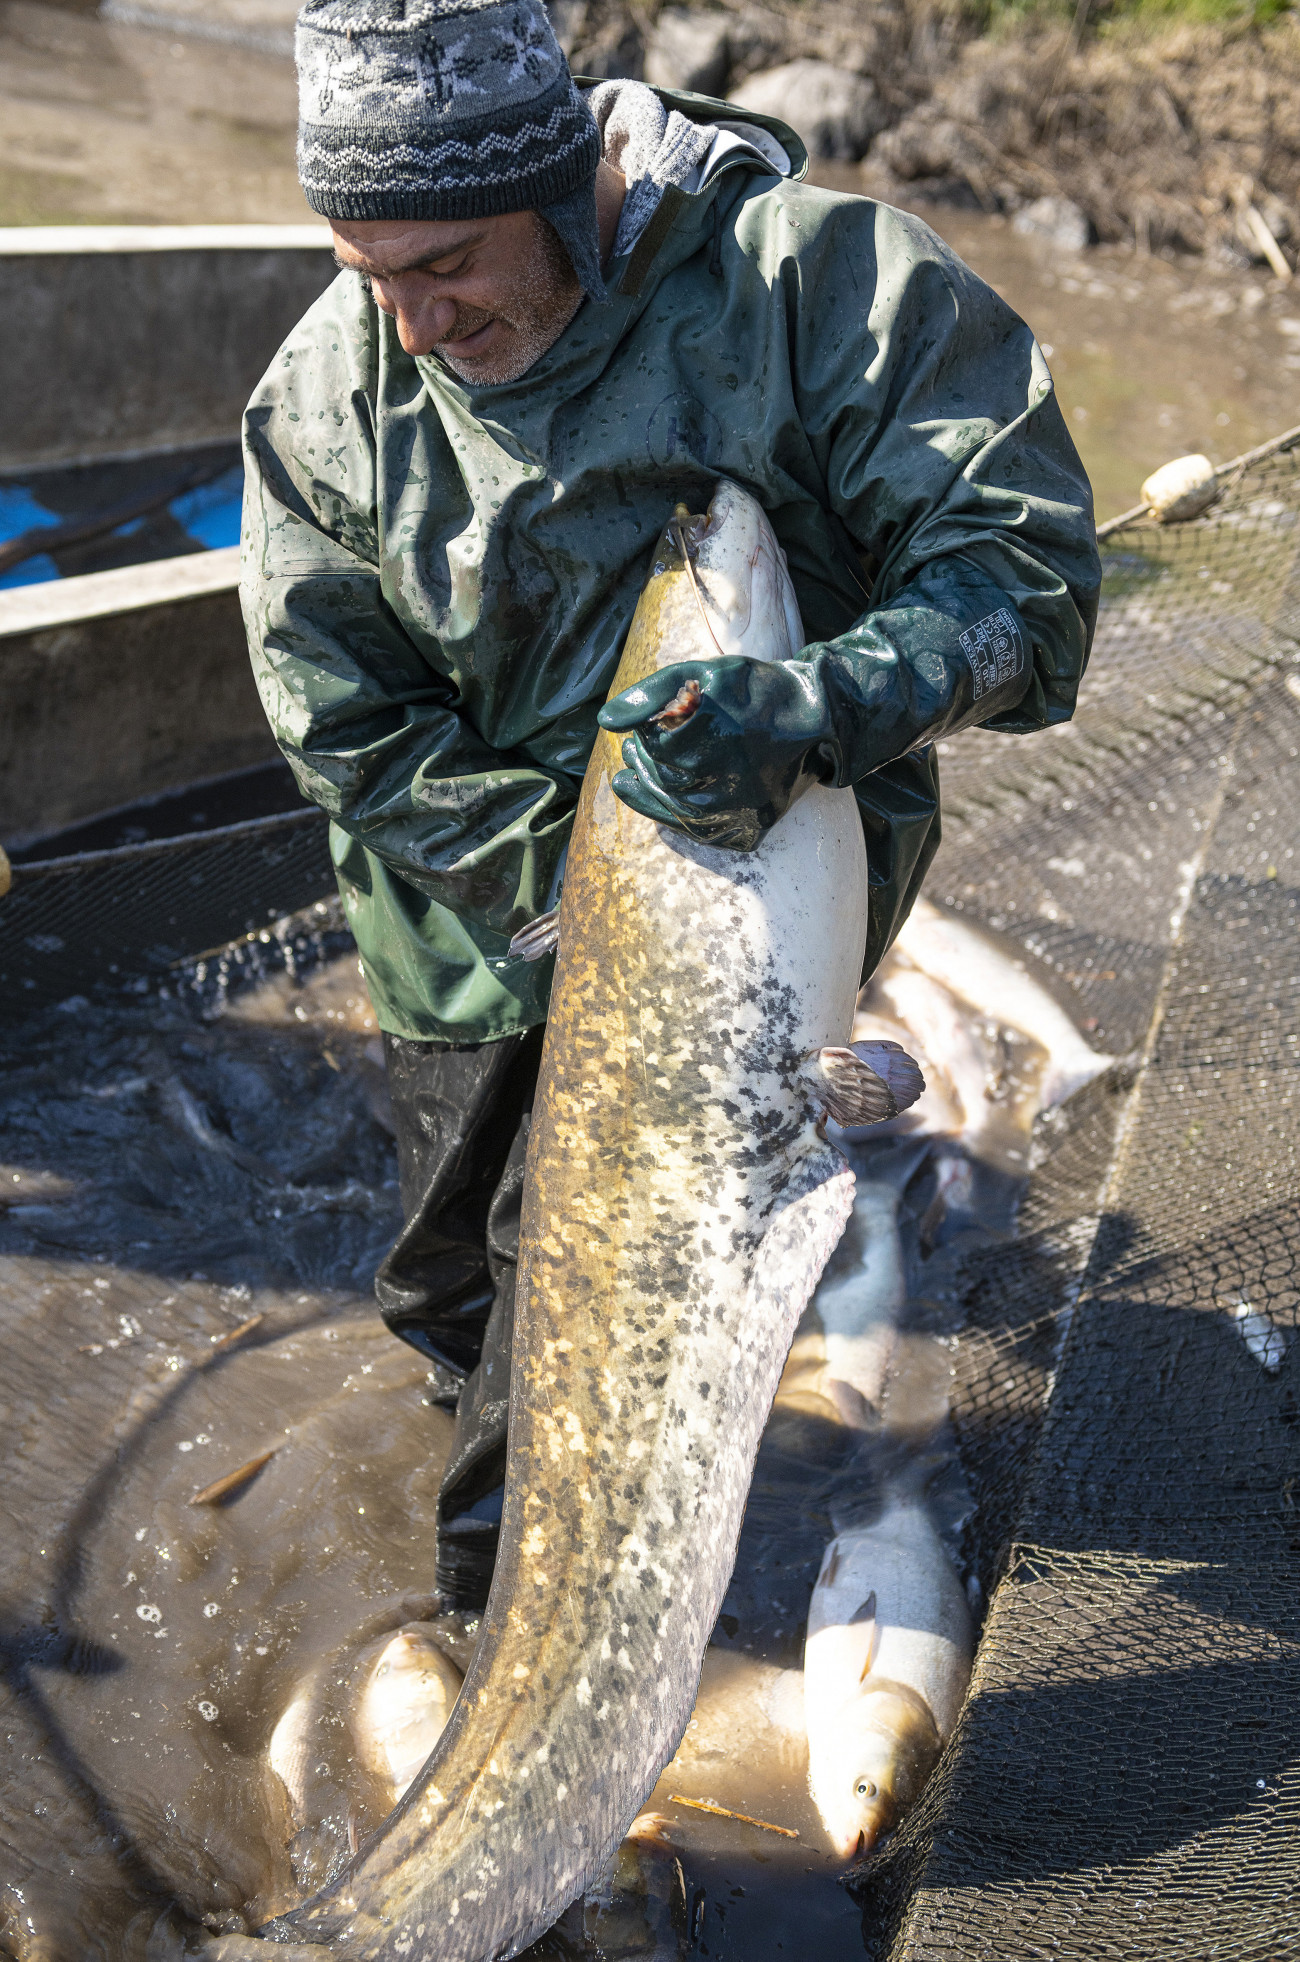 Tiszavasvári, 2020. április 1.
Halász válogatja a halfajtákat a Szabolcsi Halászati Kft. tiszavasvári tóegységén 2020. április 1-jén. A 600 hektáron gazdálkodó halgazdaság évente 450-550 tonna édesvízi halat tud lehalászni. A koronavírus-járvány miatt az exportálási lehetőségek és a belföldi kereslet is csökkent, még 100-120 tonnányi vár értékesítésre.
MTI/Balázs Attila